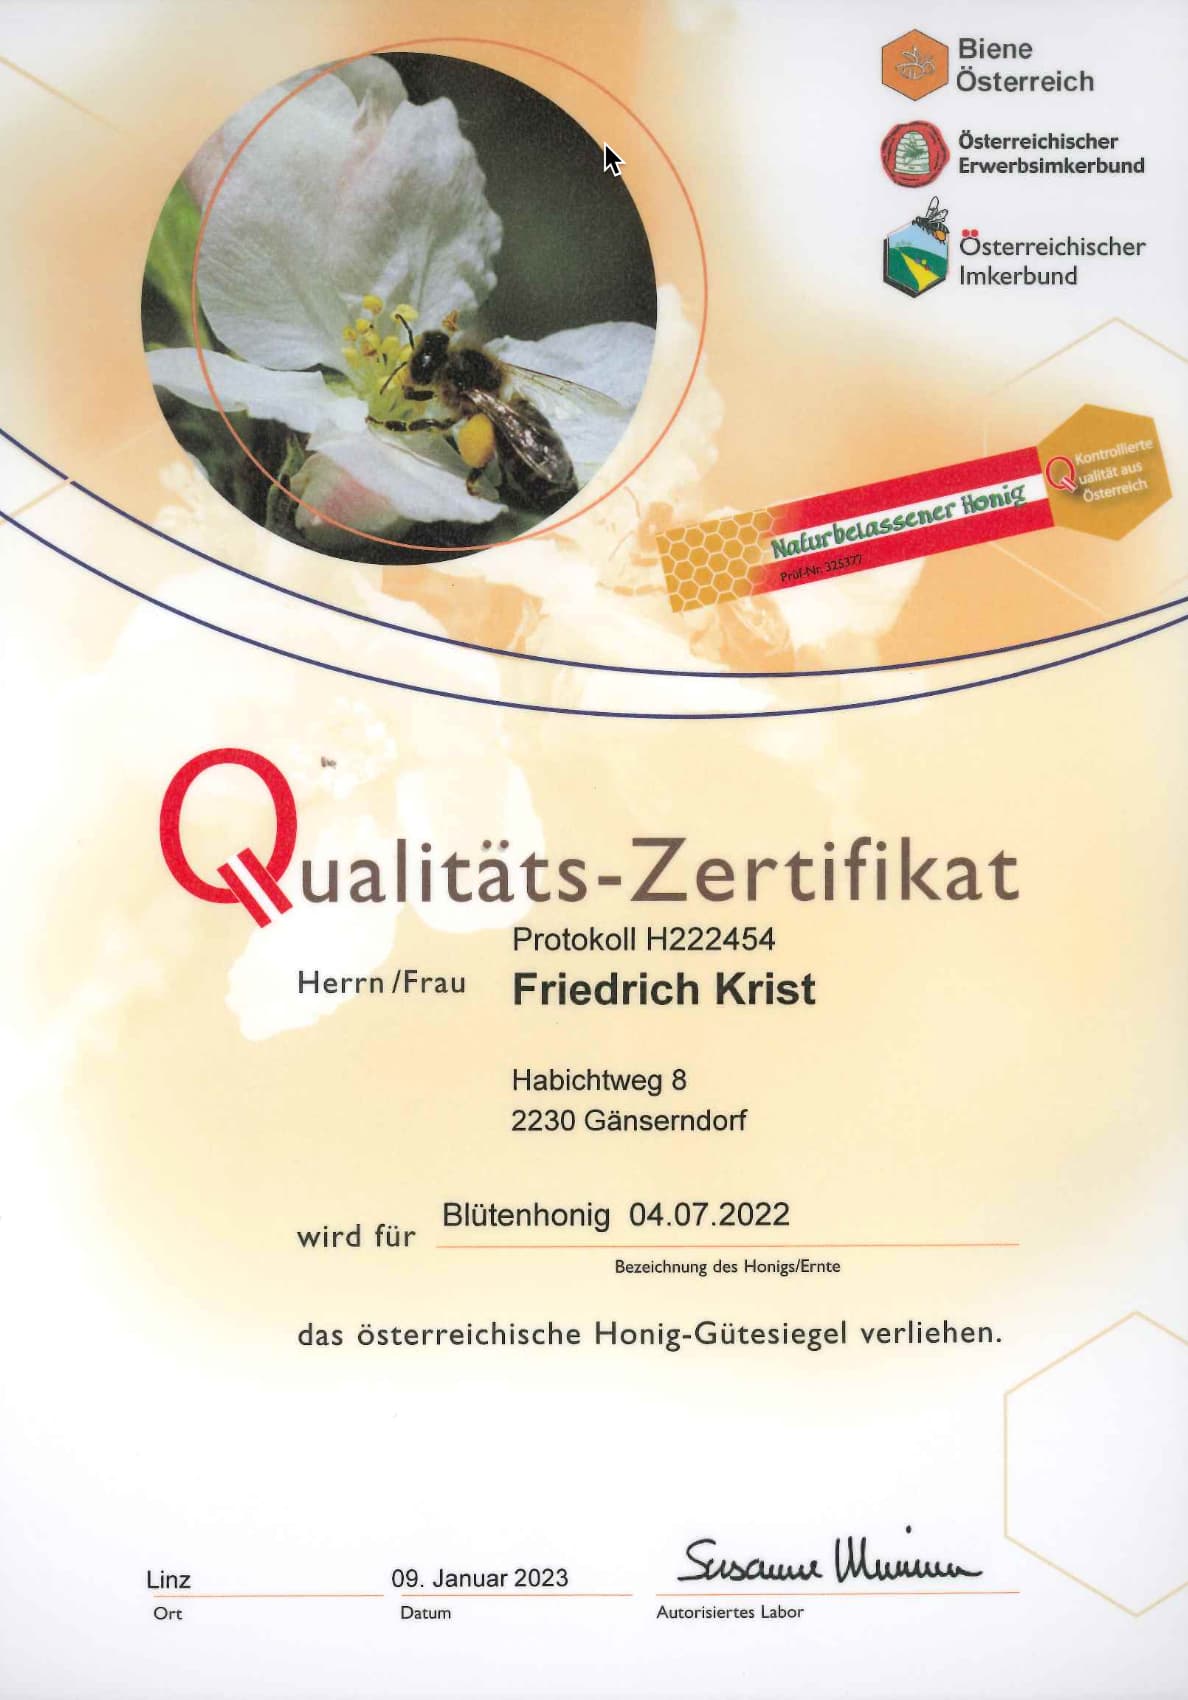 Qualitäts-Zertifikat Blütenhonig